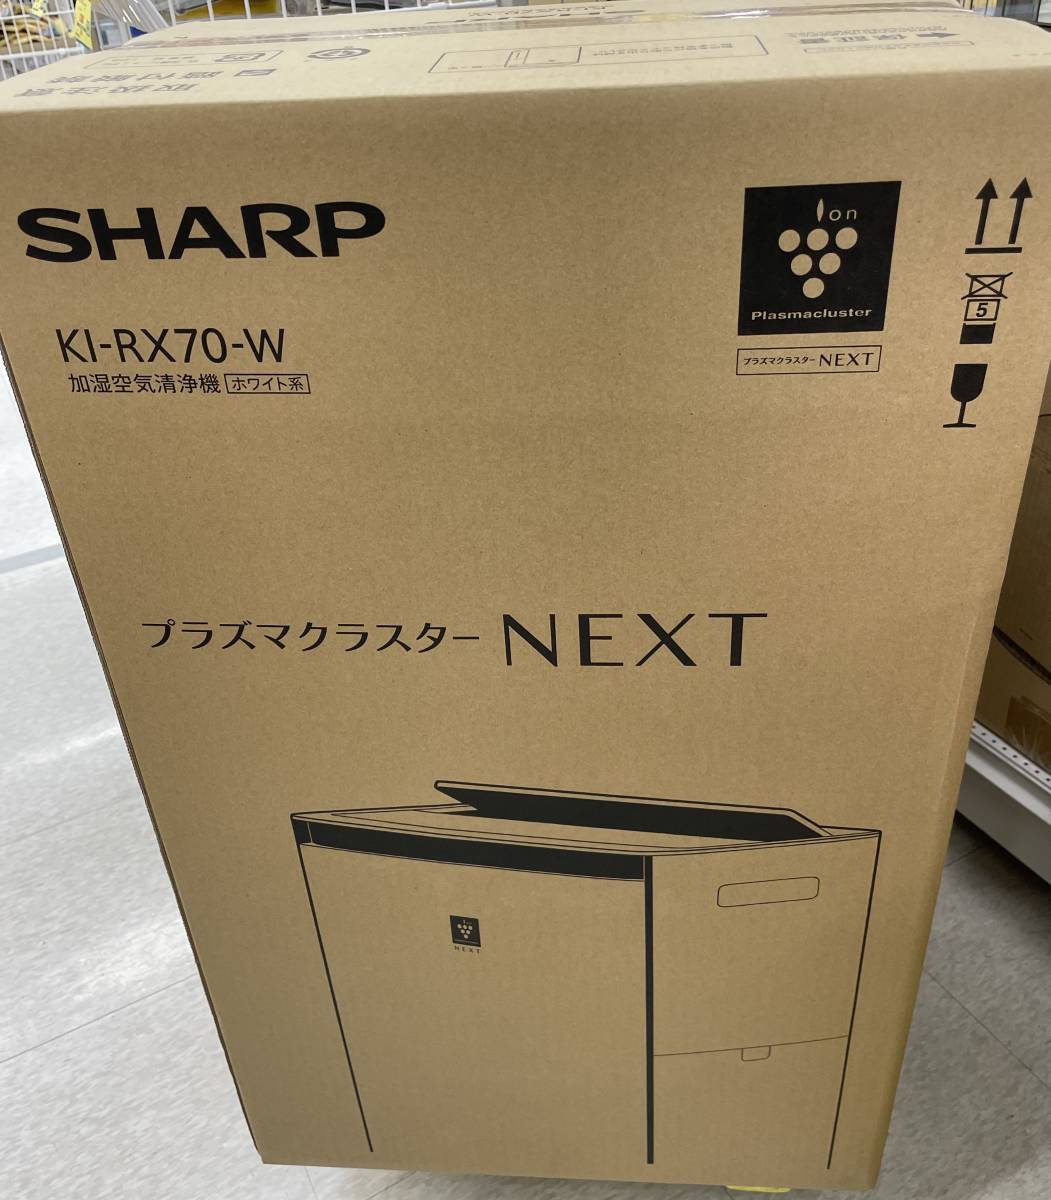  новый товар нераспечатанный!SHARP sharp увлажнение очиститель воздуха KI-RX70-W белый "plasma cluster" система очищения воздуха ионами NEXT установка *24 год 2 месяц покупка производитель 1 год гарантия 